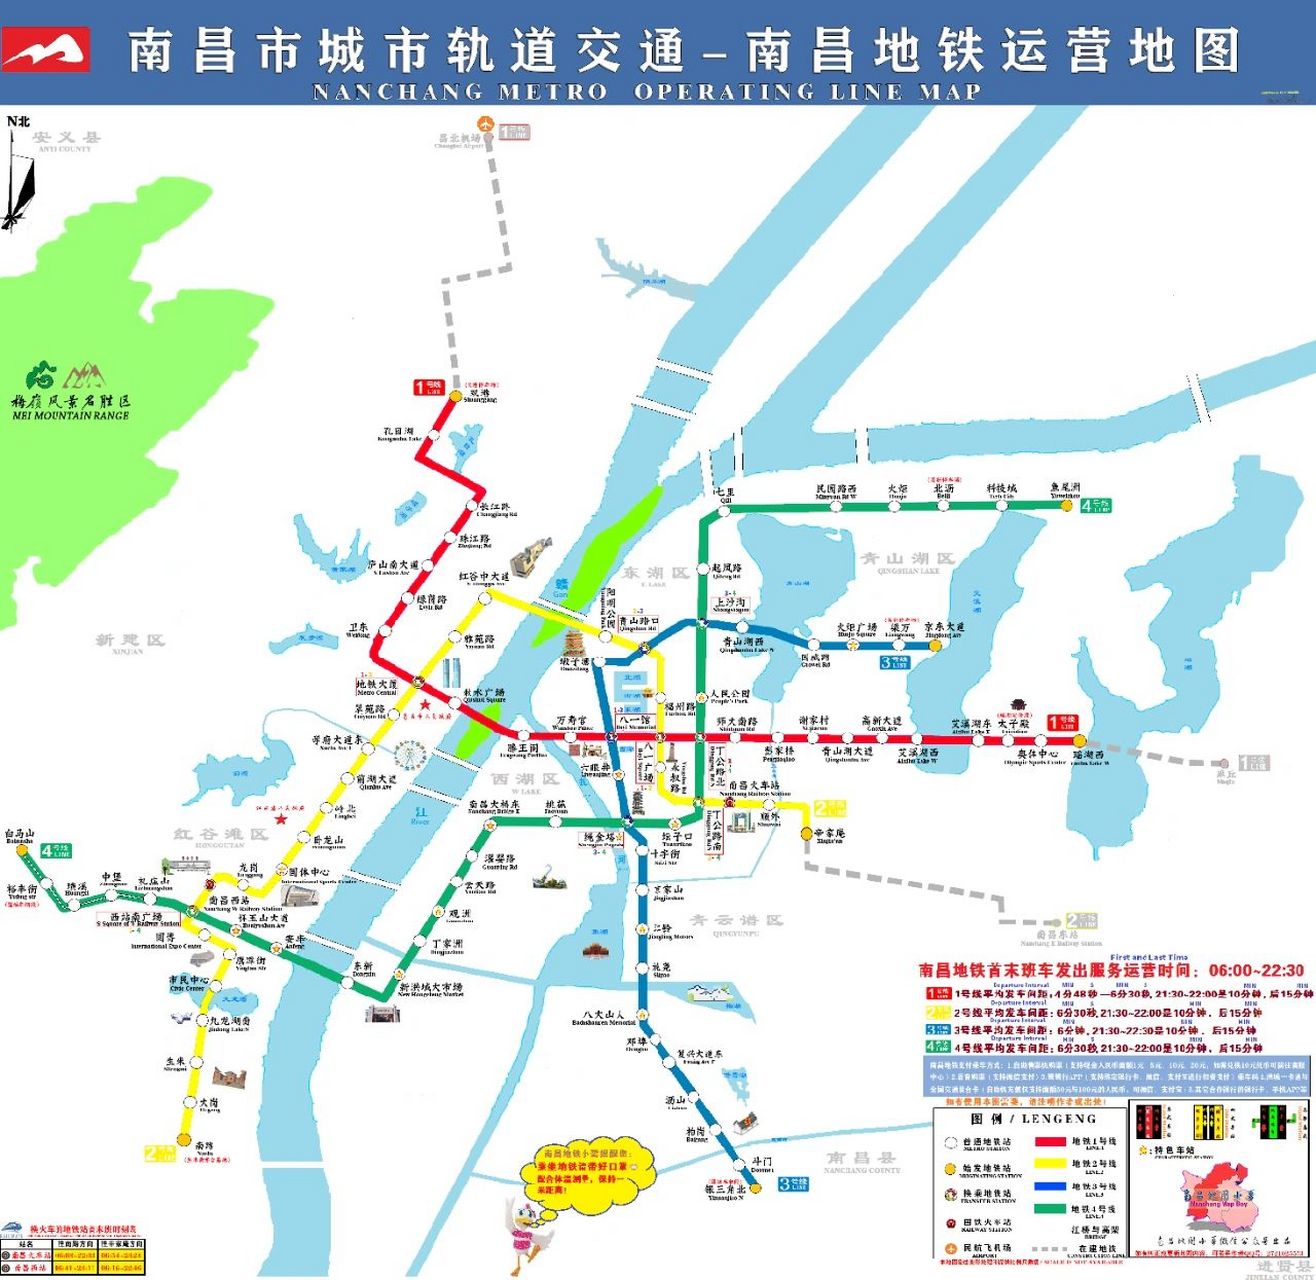 南昌地铁运营地图 南昌地铁运营地图更新